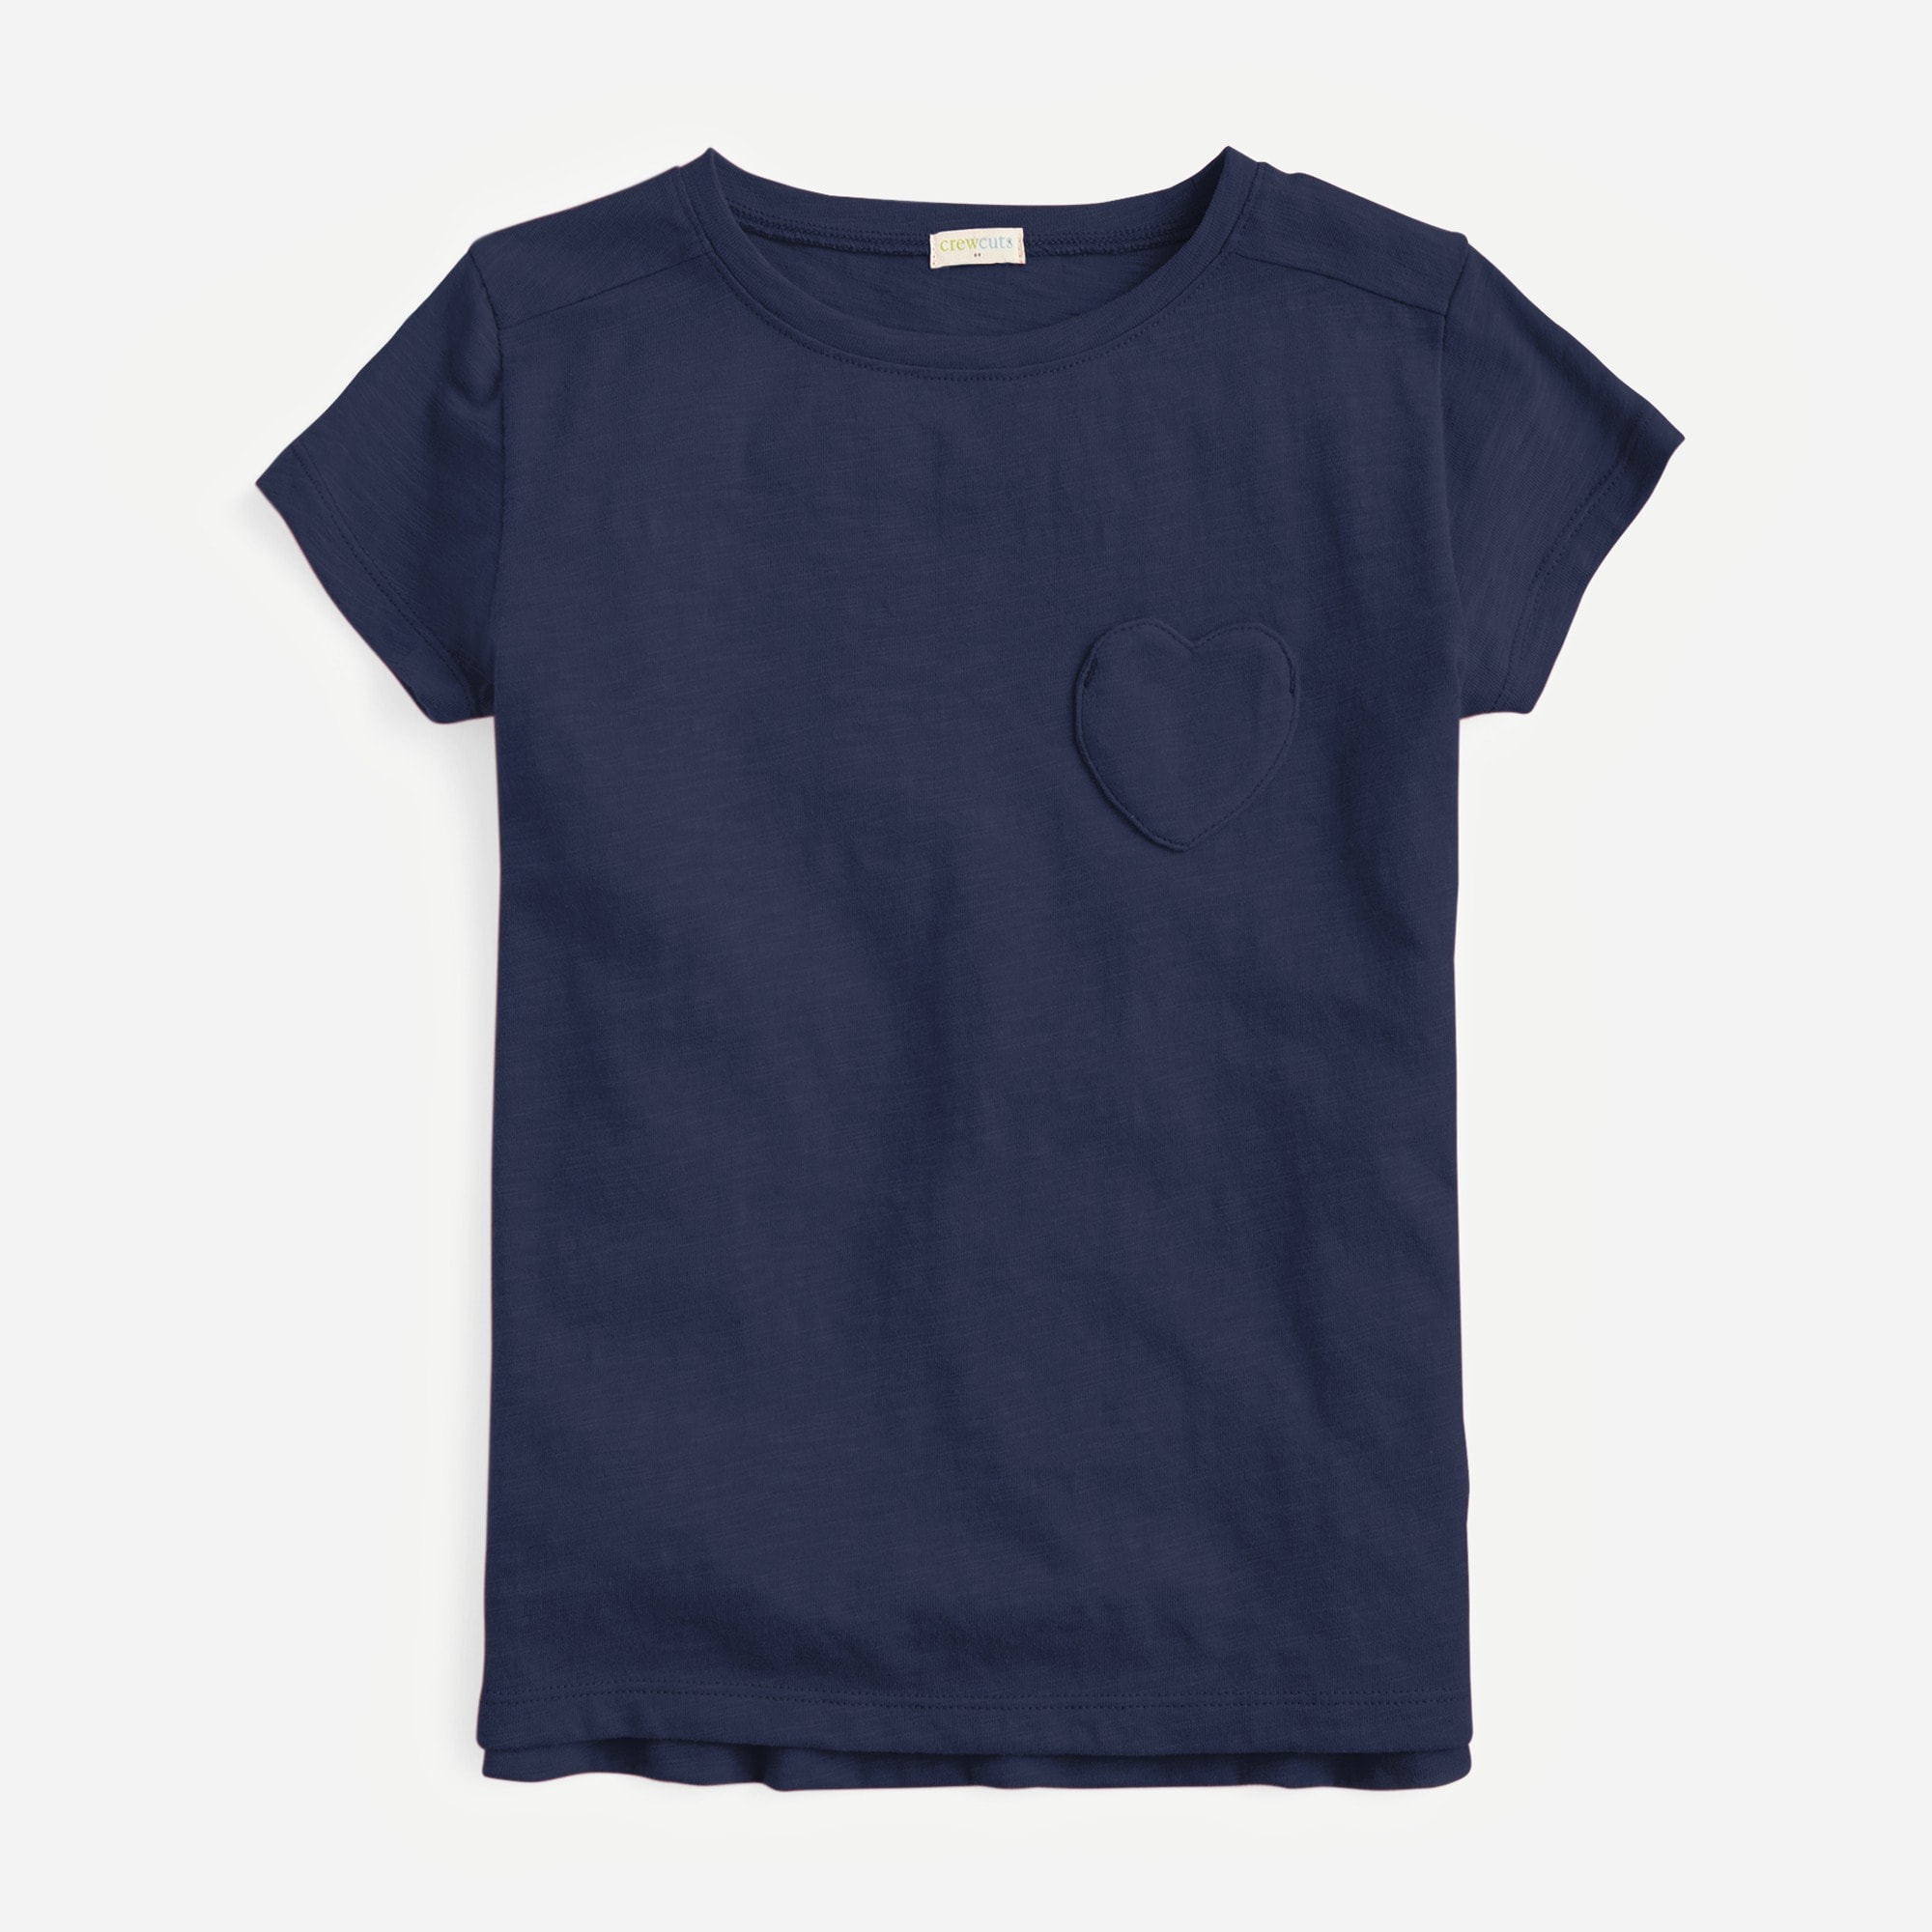  Girls' short-sleeve heart-pocket T-shirt